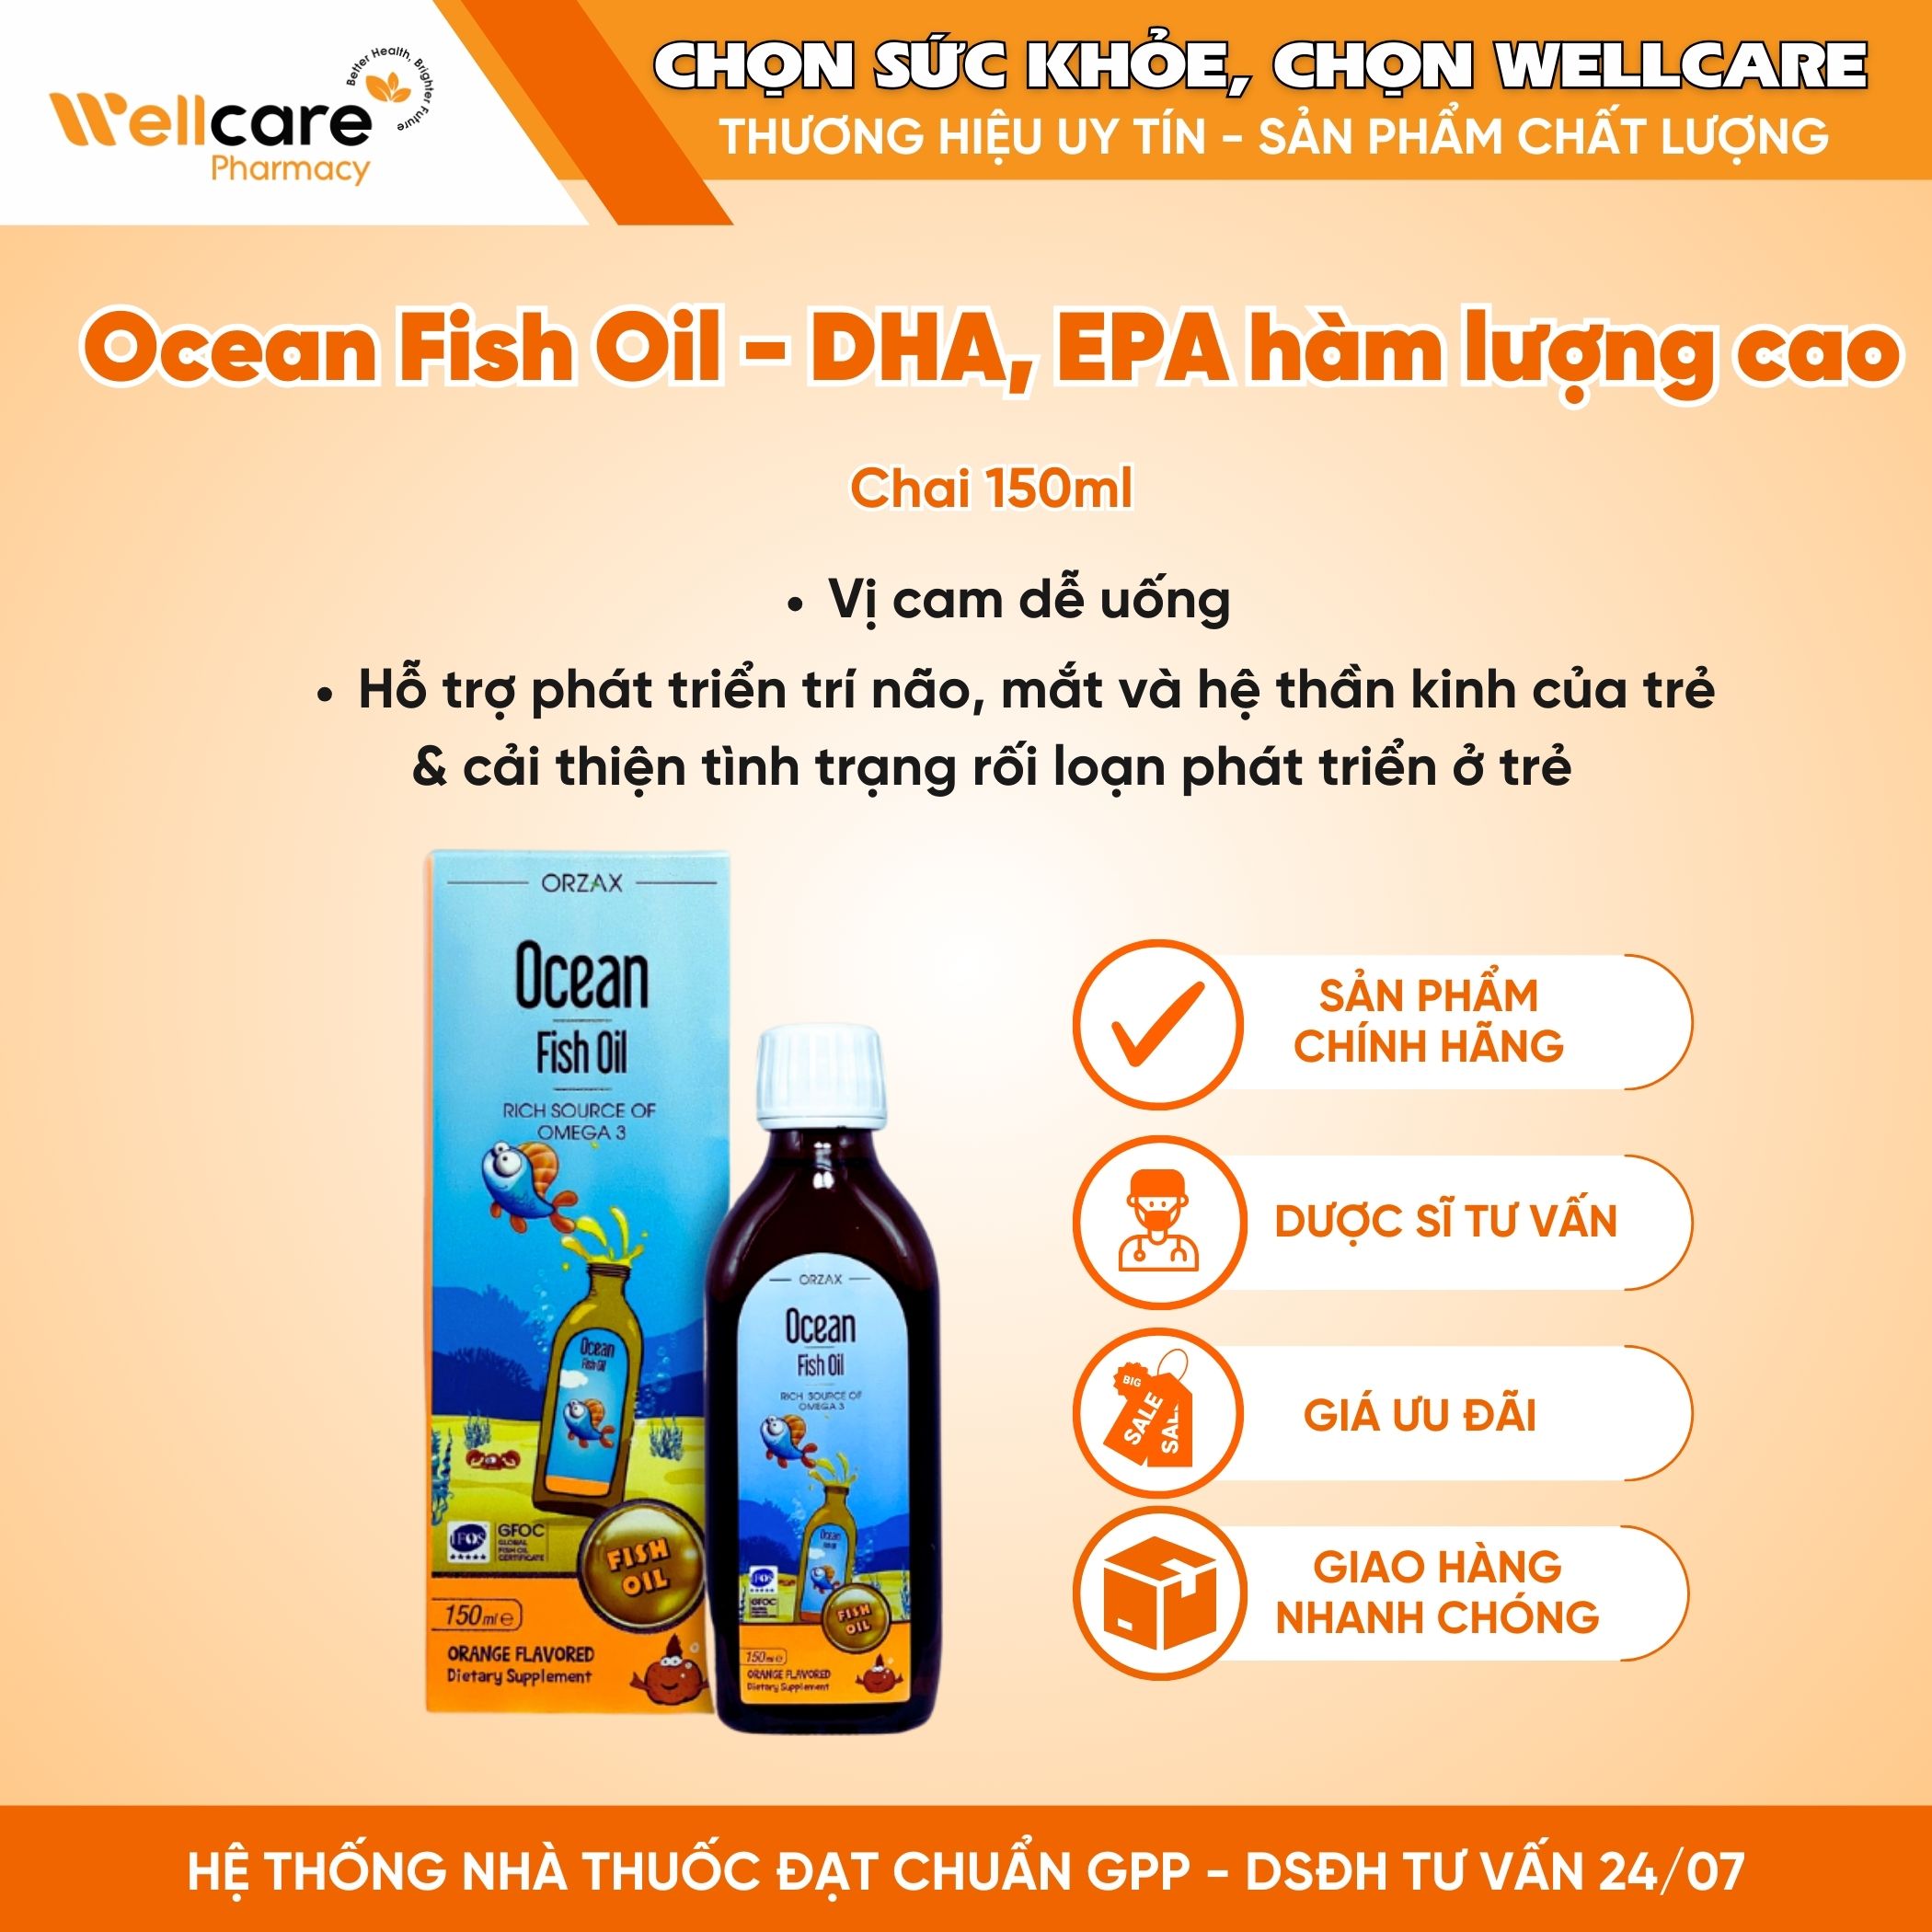 Ocean Fish Oil Orange Flavored – Hỗ trợ phát triển trí não và thị giác của trẻ (Chai 150ml)